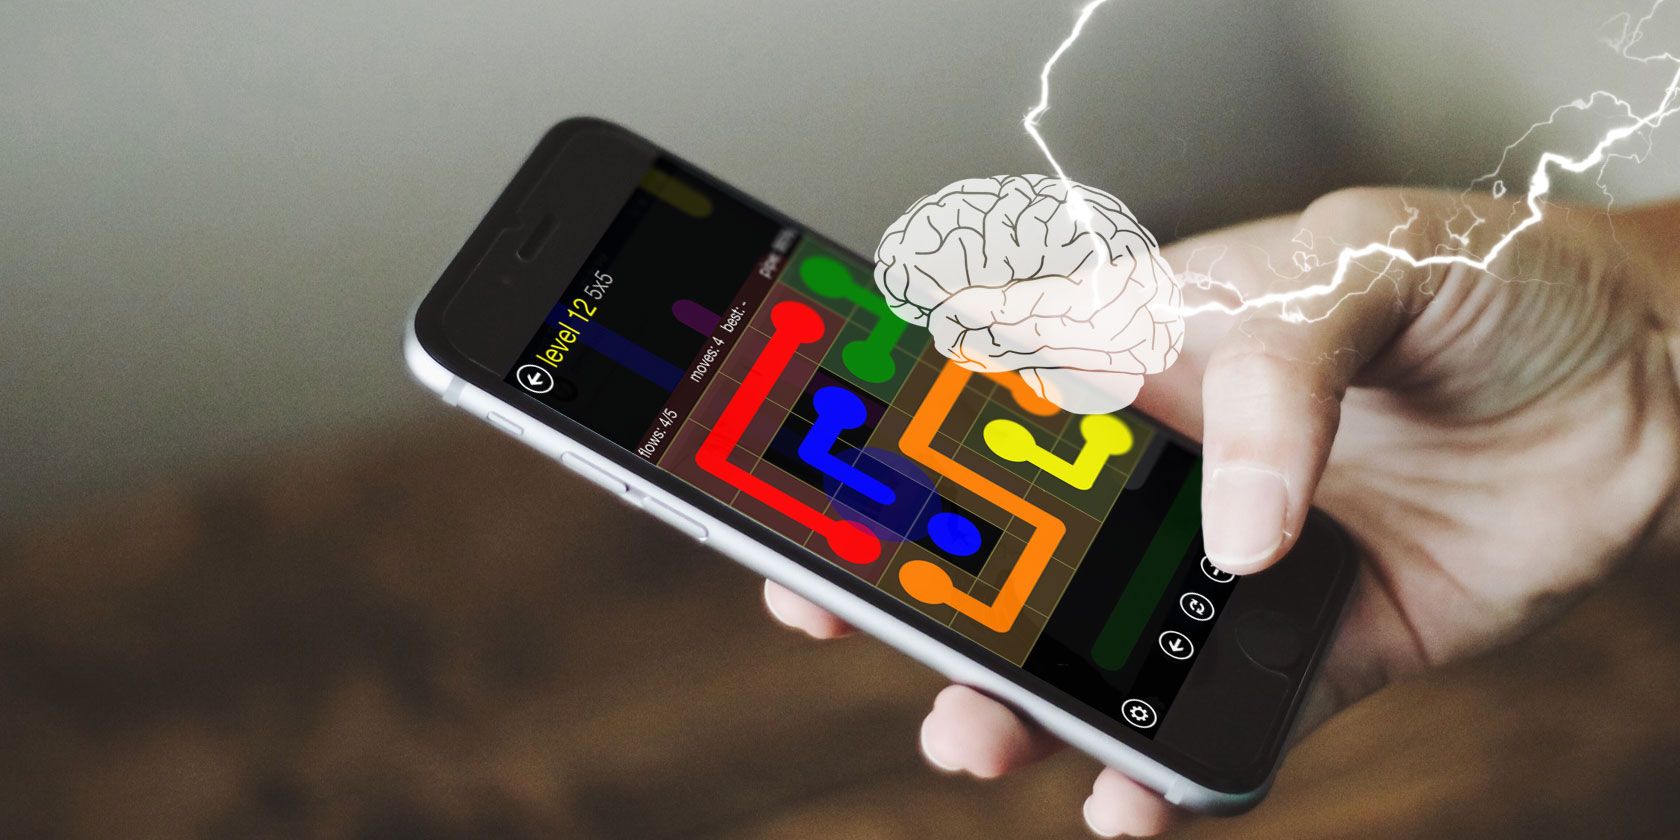 Jogos Mentais Mind Games – Apps no Google Play